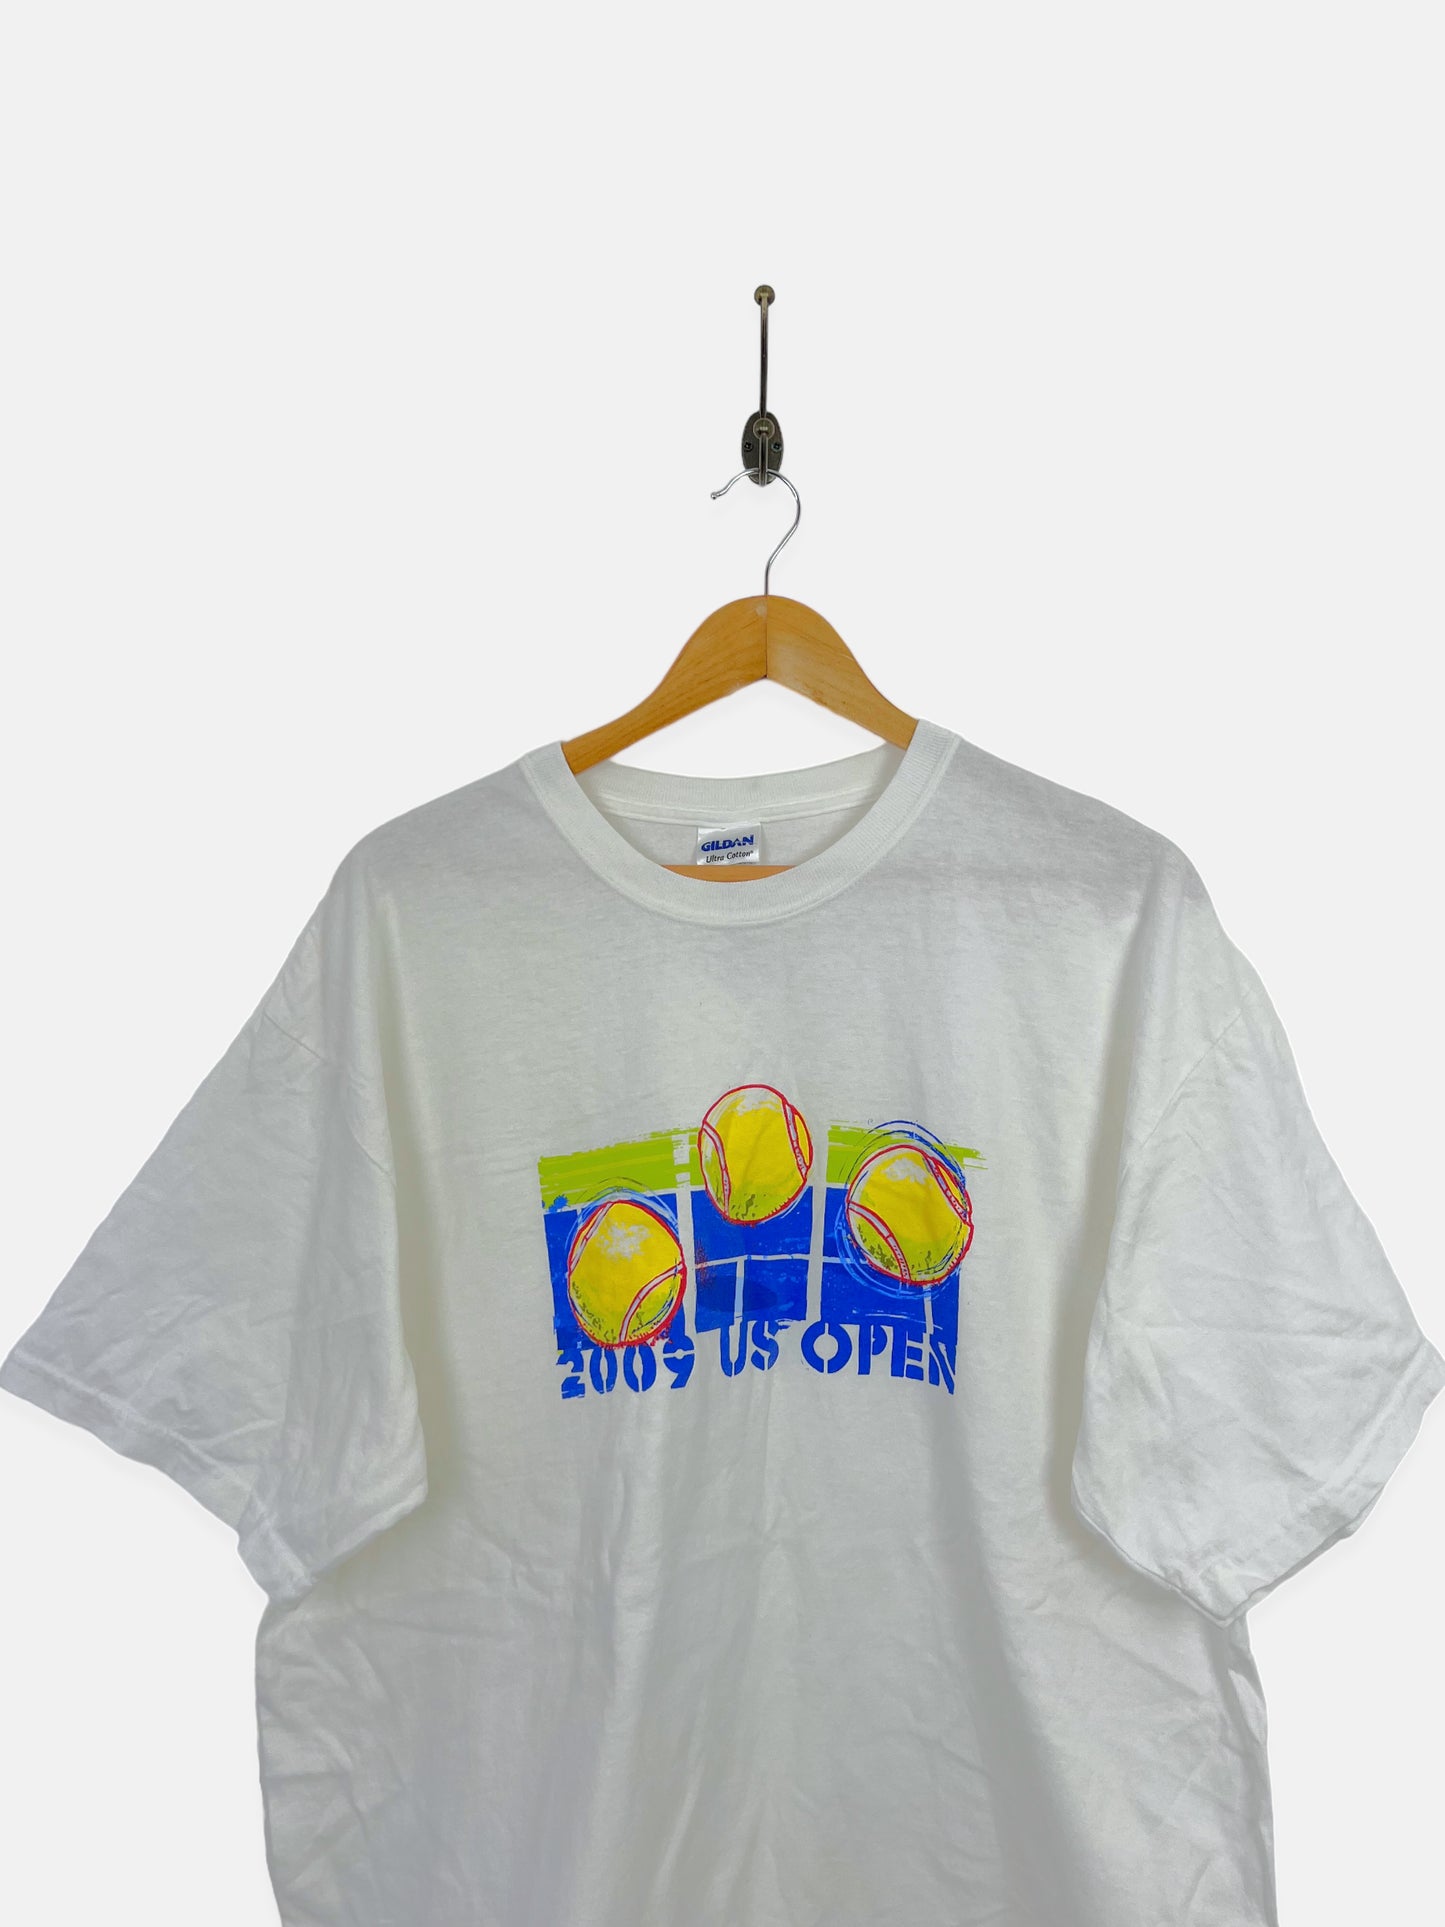 2009 US Tennis Open Vintage T-Shirt Size XL